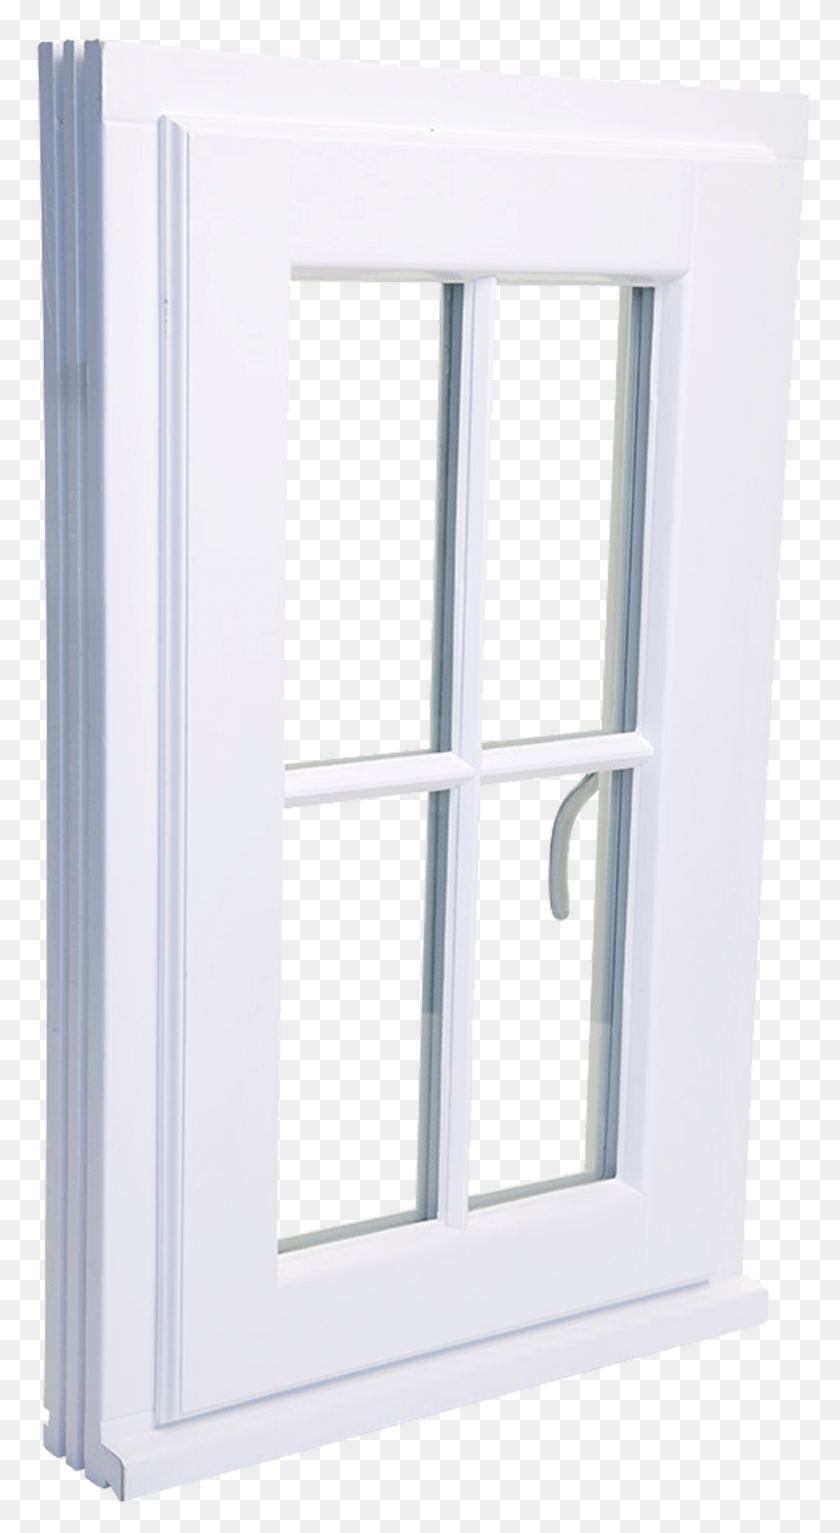 1407x2658 Двери И Окна Olsen, Дверь, Французская Дверь, Окно Изображения Hd Png Скачать